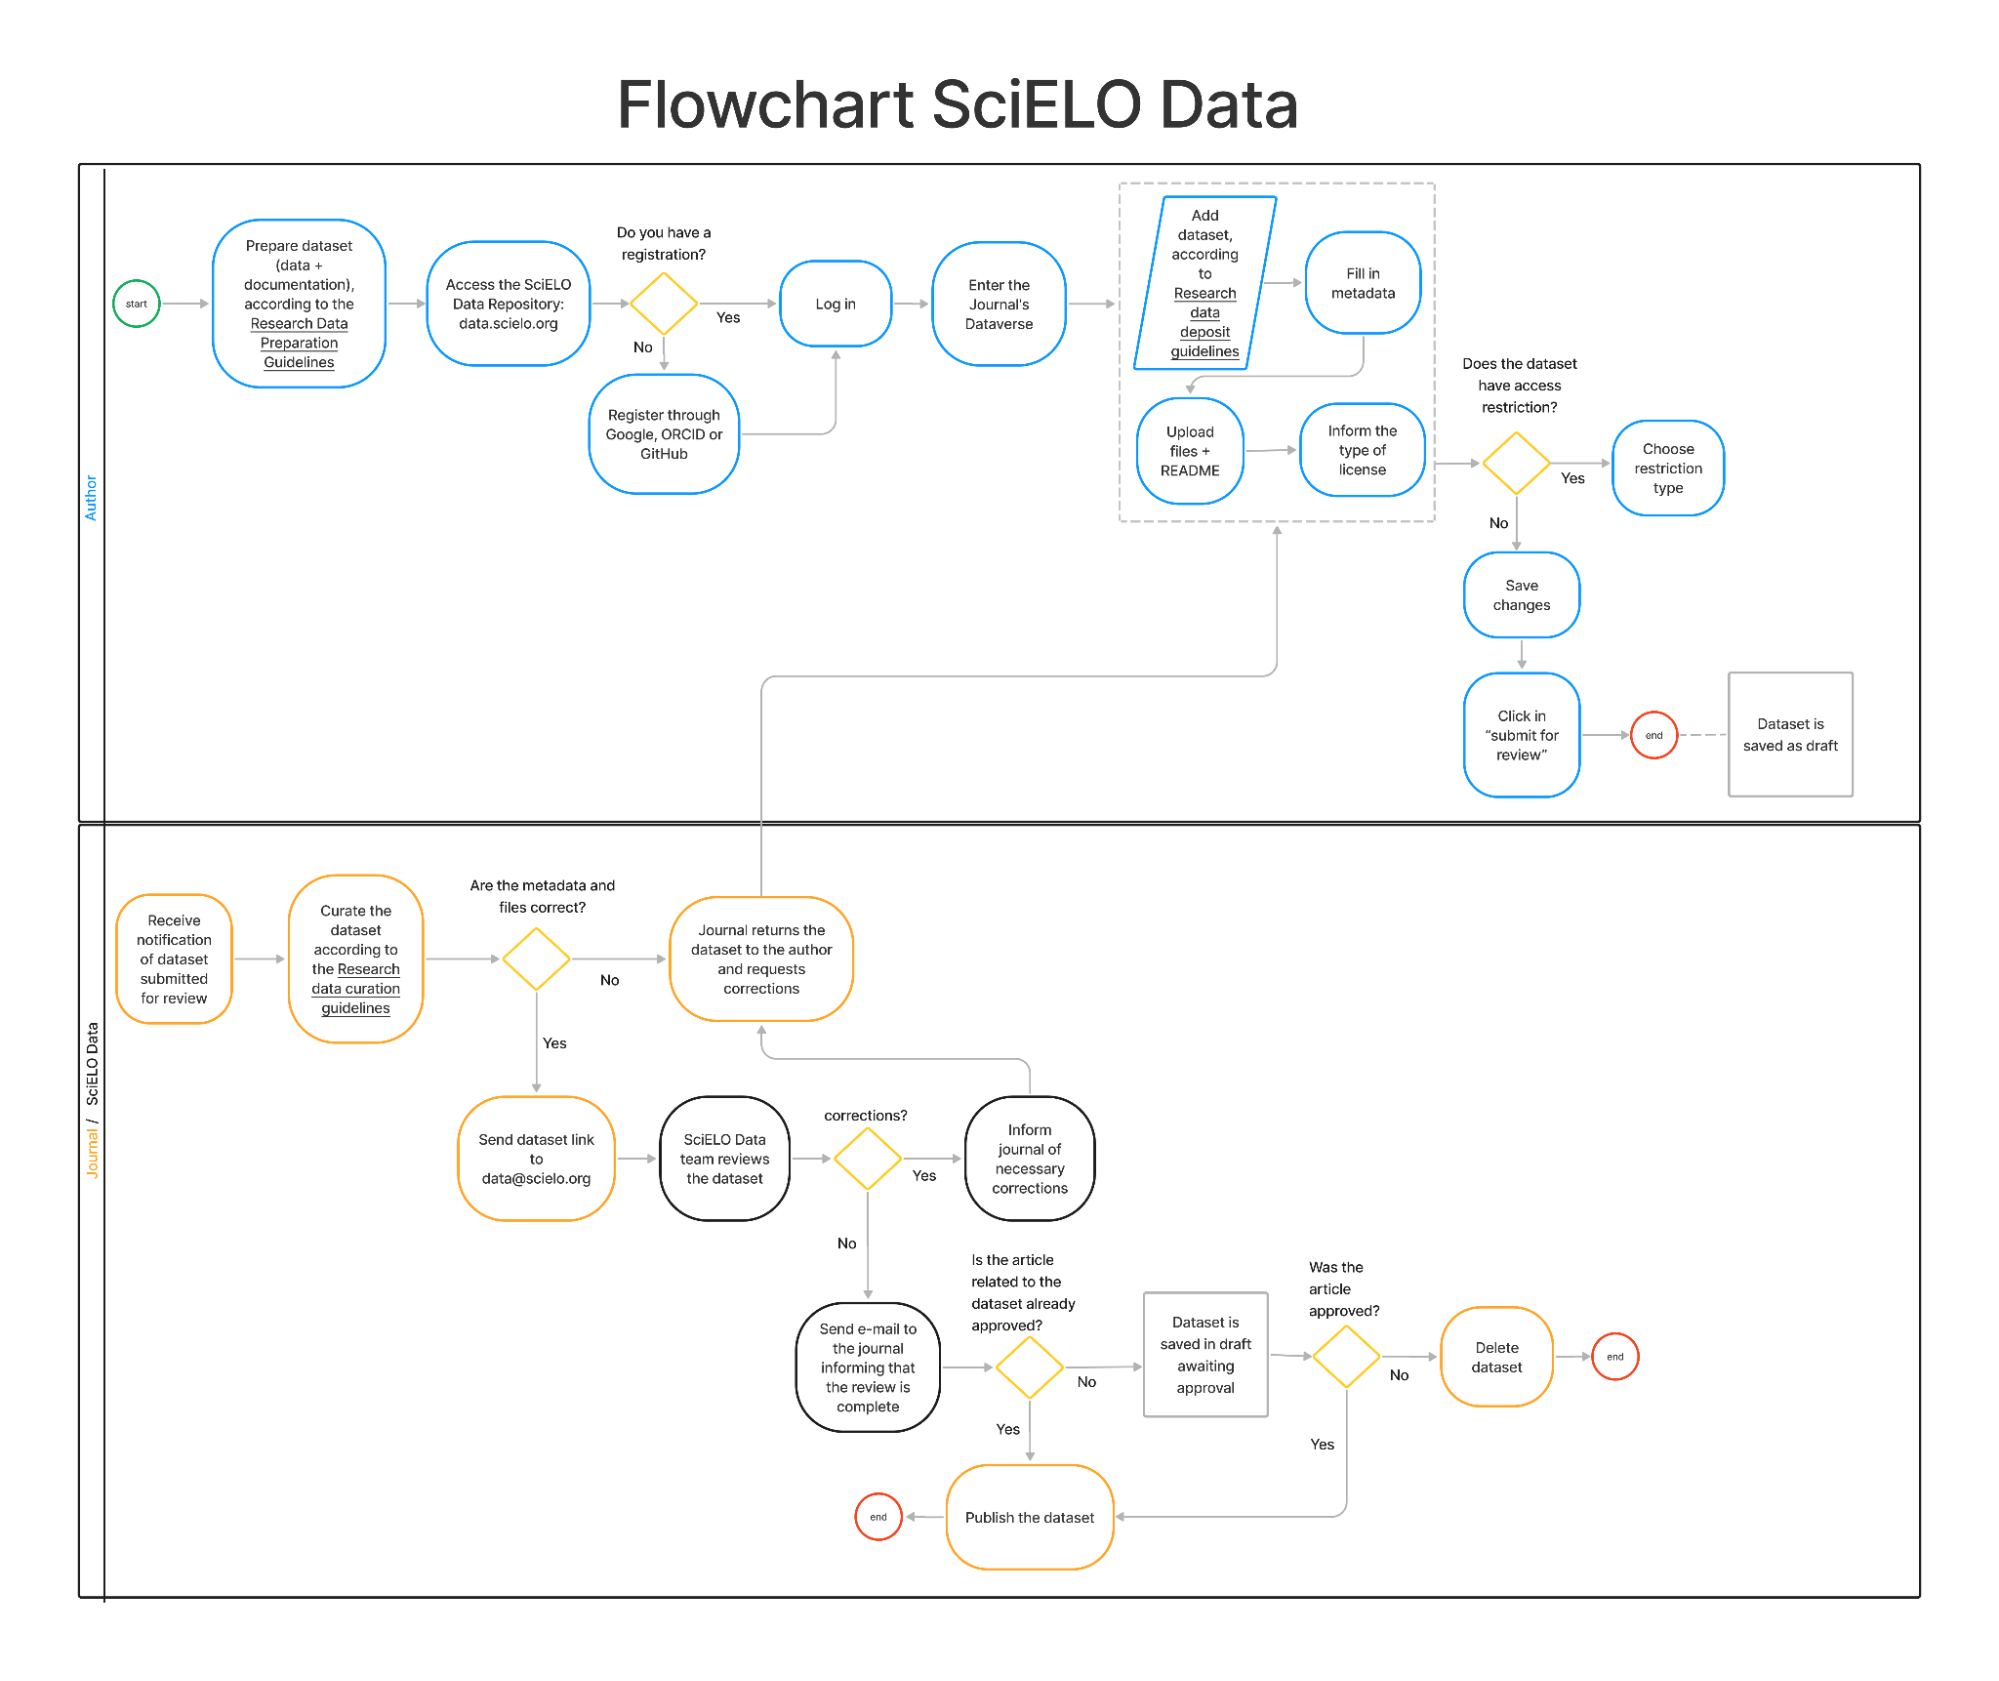 SciELO Data flowchart